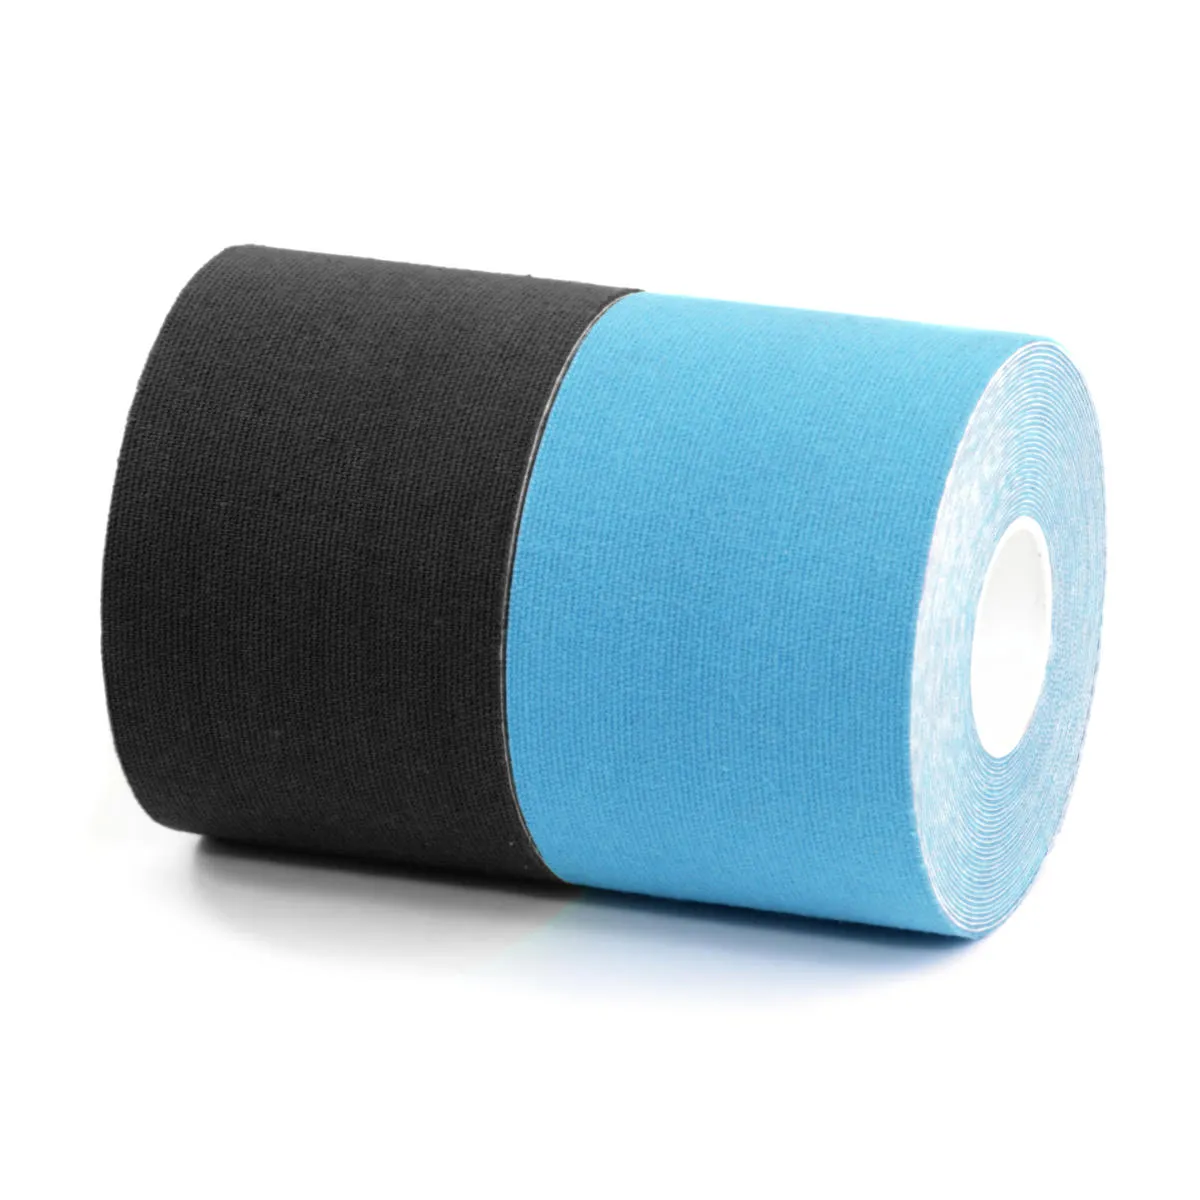 BronVit Sport Kinesio Tape set 5 cm x 6 m tejpovací páska 2 ks černá + modrá